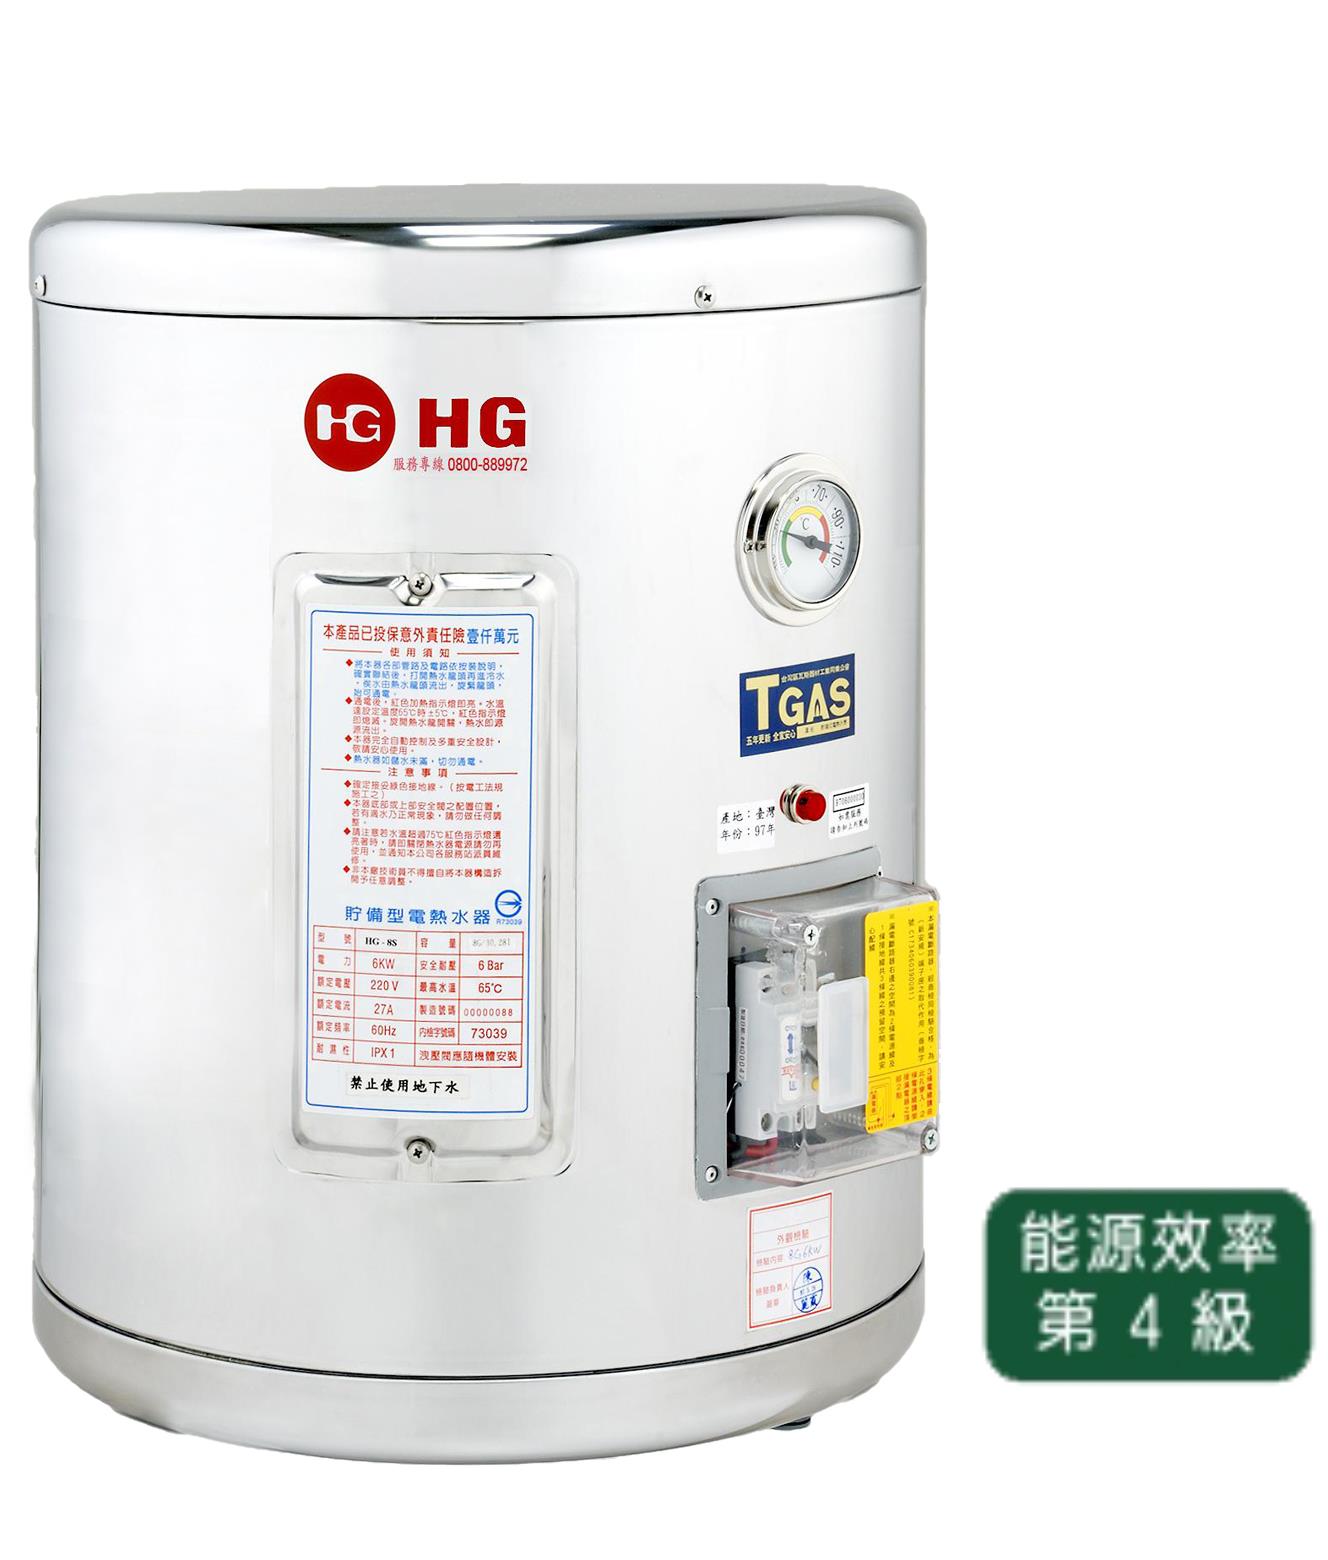 GC-8 壁掛式電能熱水器